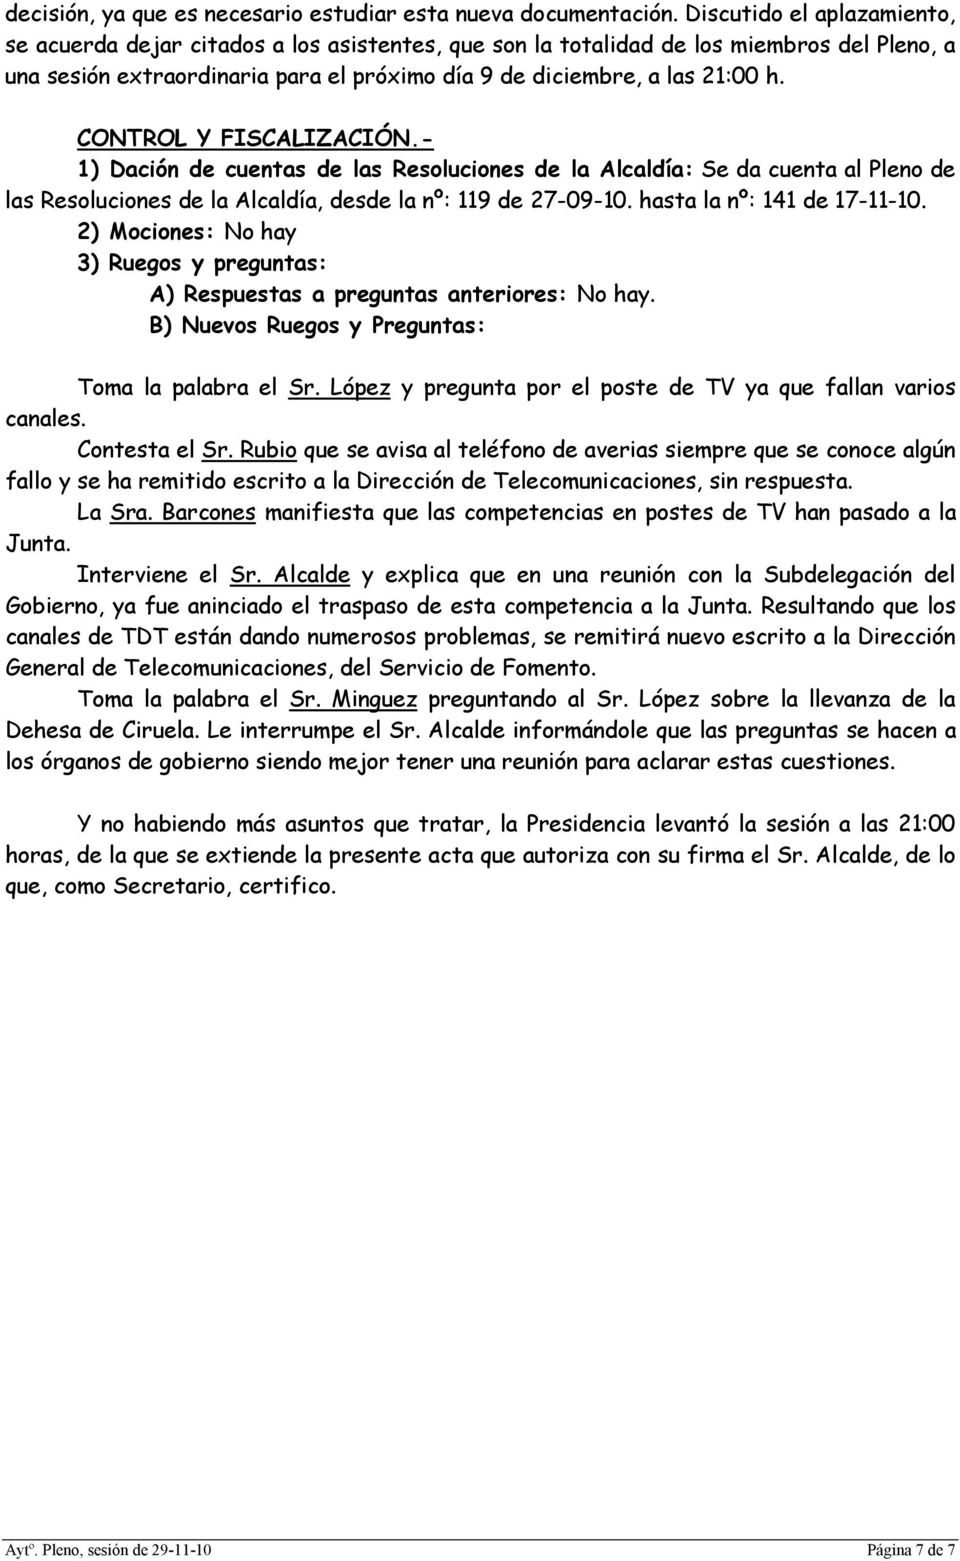 CONTROL Y FISCALIZACIÓN.- 1) Dación de cuentas de las Resoluciones de la Alcaldía: Se da cuenta al Pleno de las Resoluciones de la Alcaldía, desde la nº: 119 de 27-09-10. hasta la nº: 141 de 17-11-10.